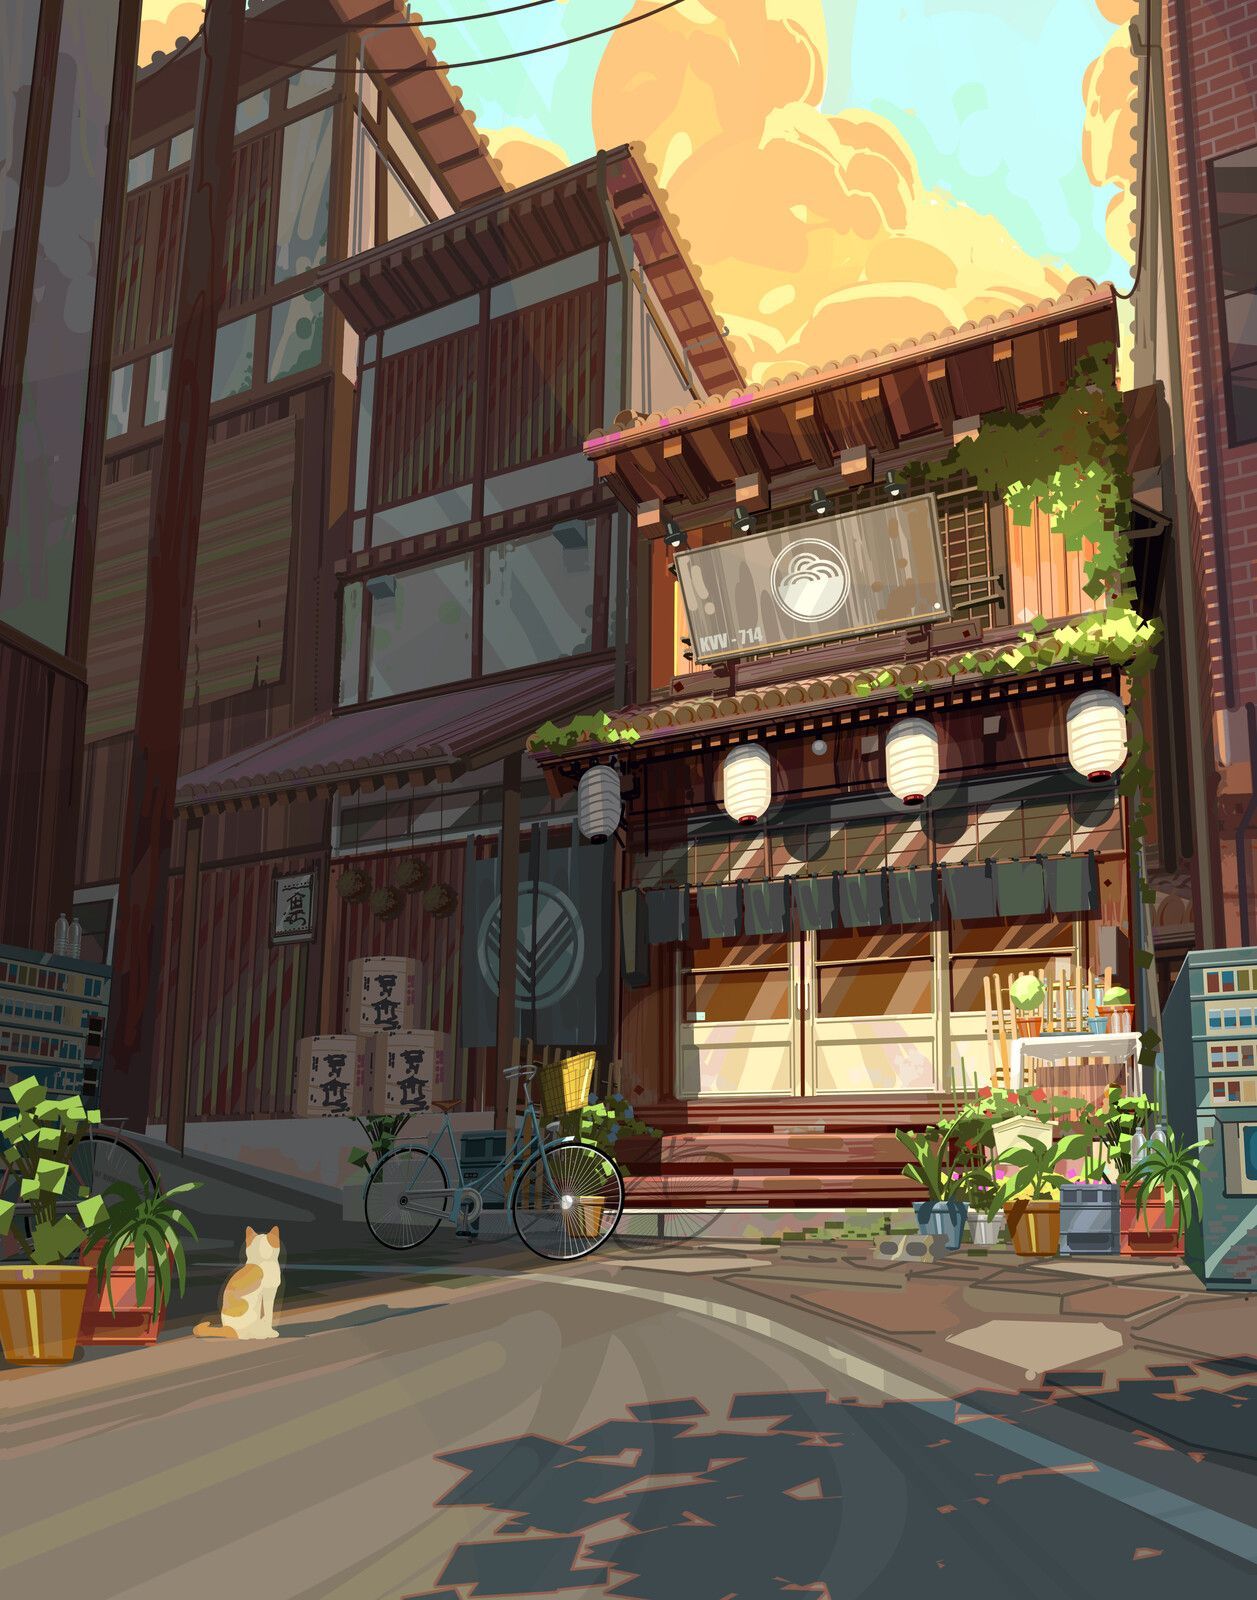 Ramen Shop Artwork OOK6V4. Anime Scenery Wallpaper, Anime Background, Anime Scenery